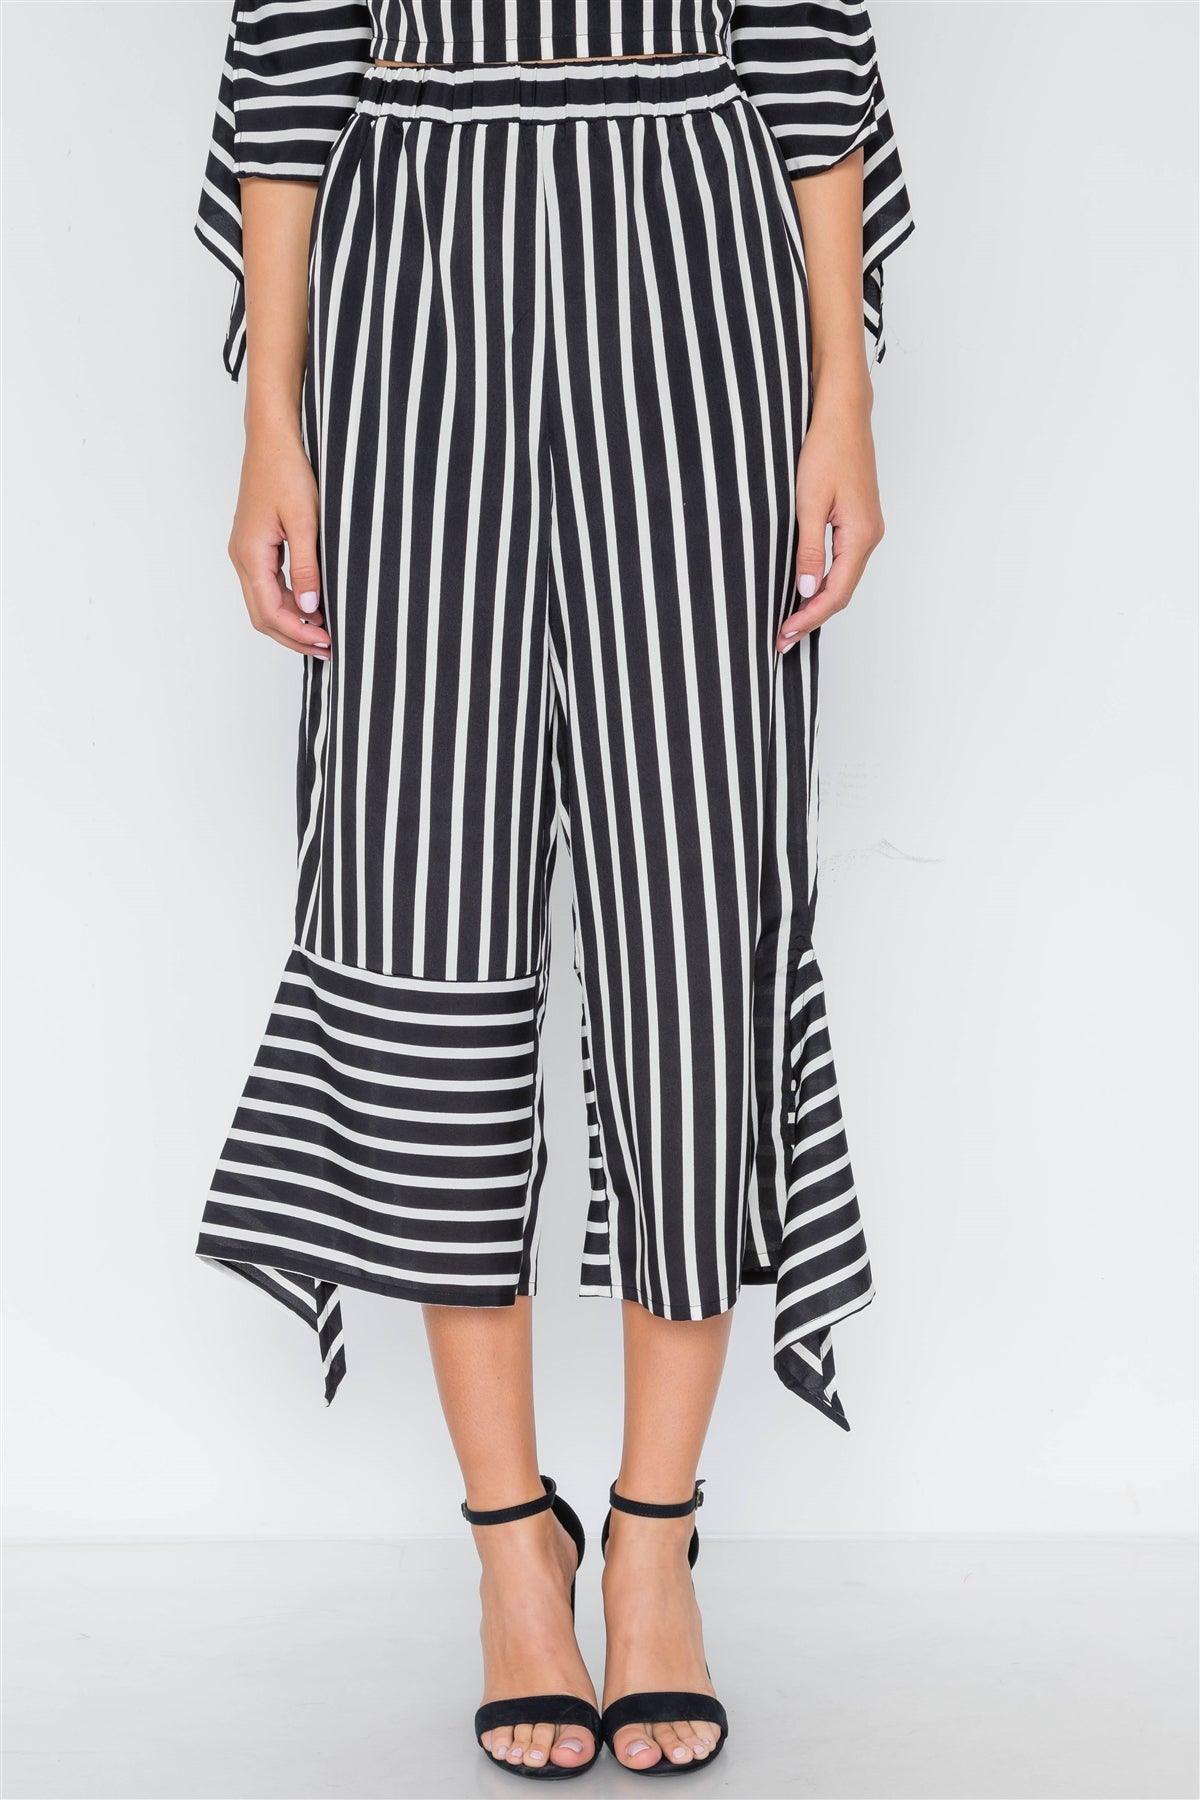 White Black Stripe Flounce Two Piece Top Pants Set